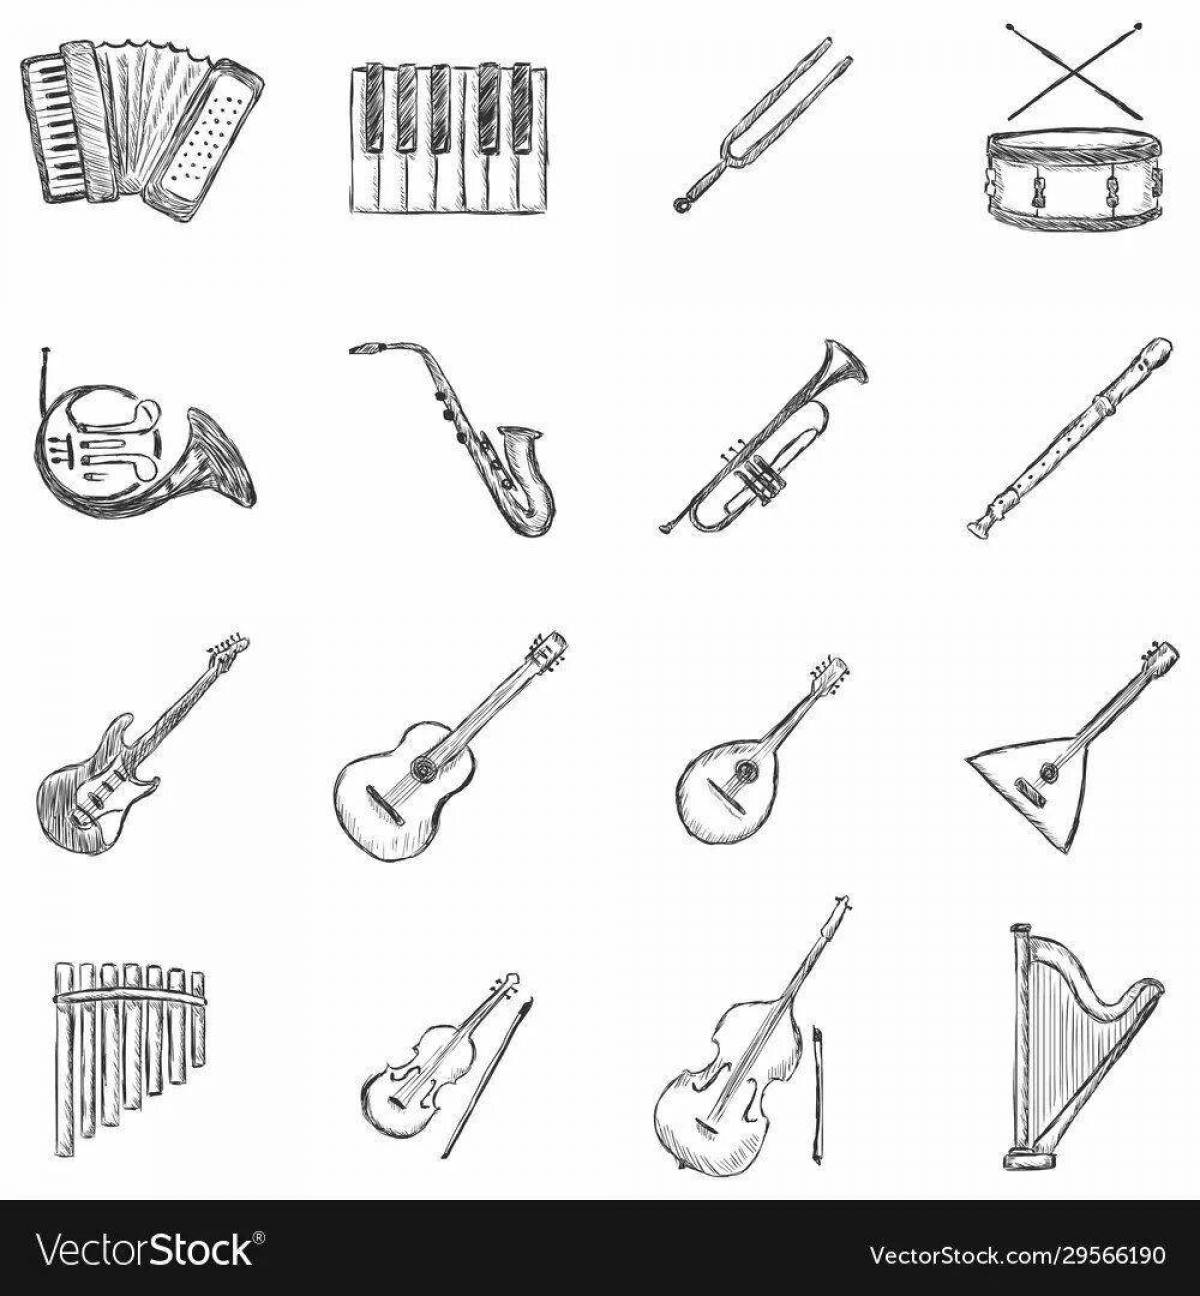 Русские народные инструменты для детей с названиями #9